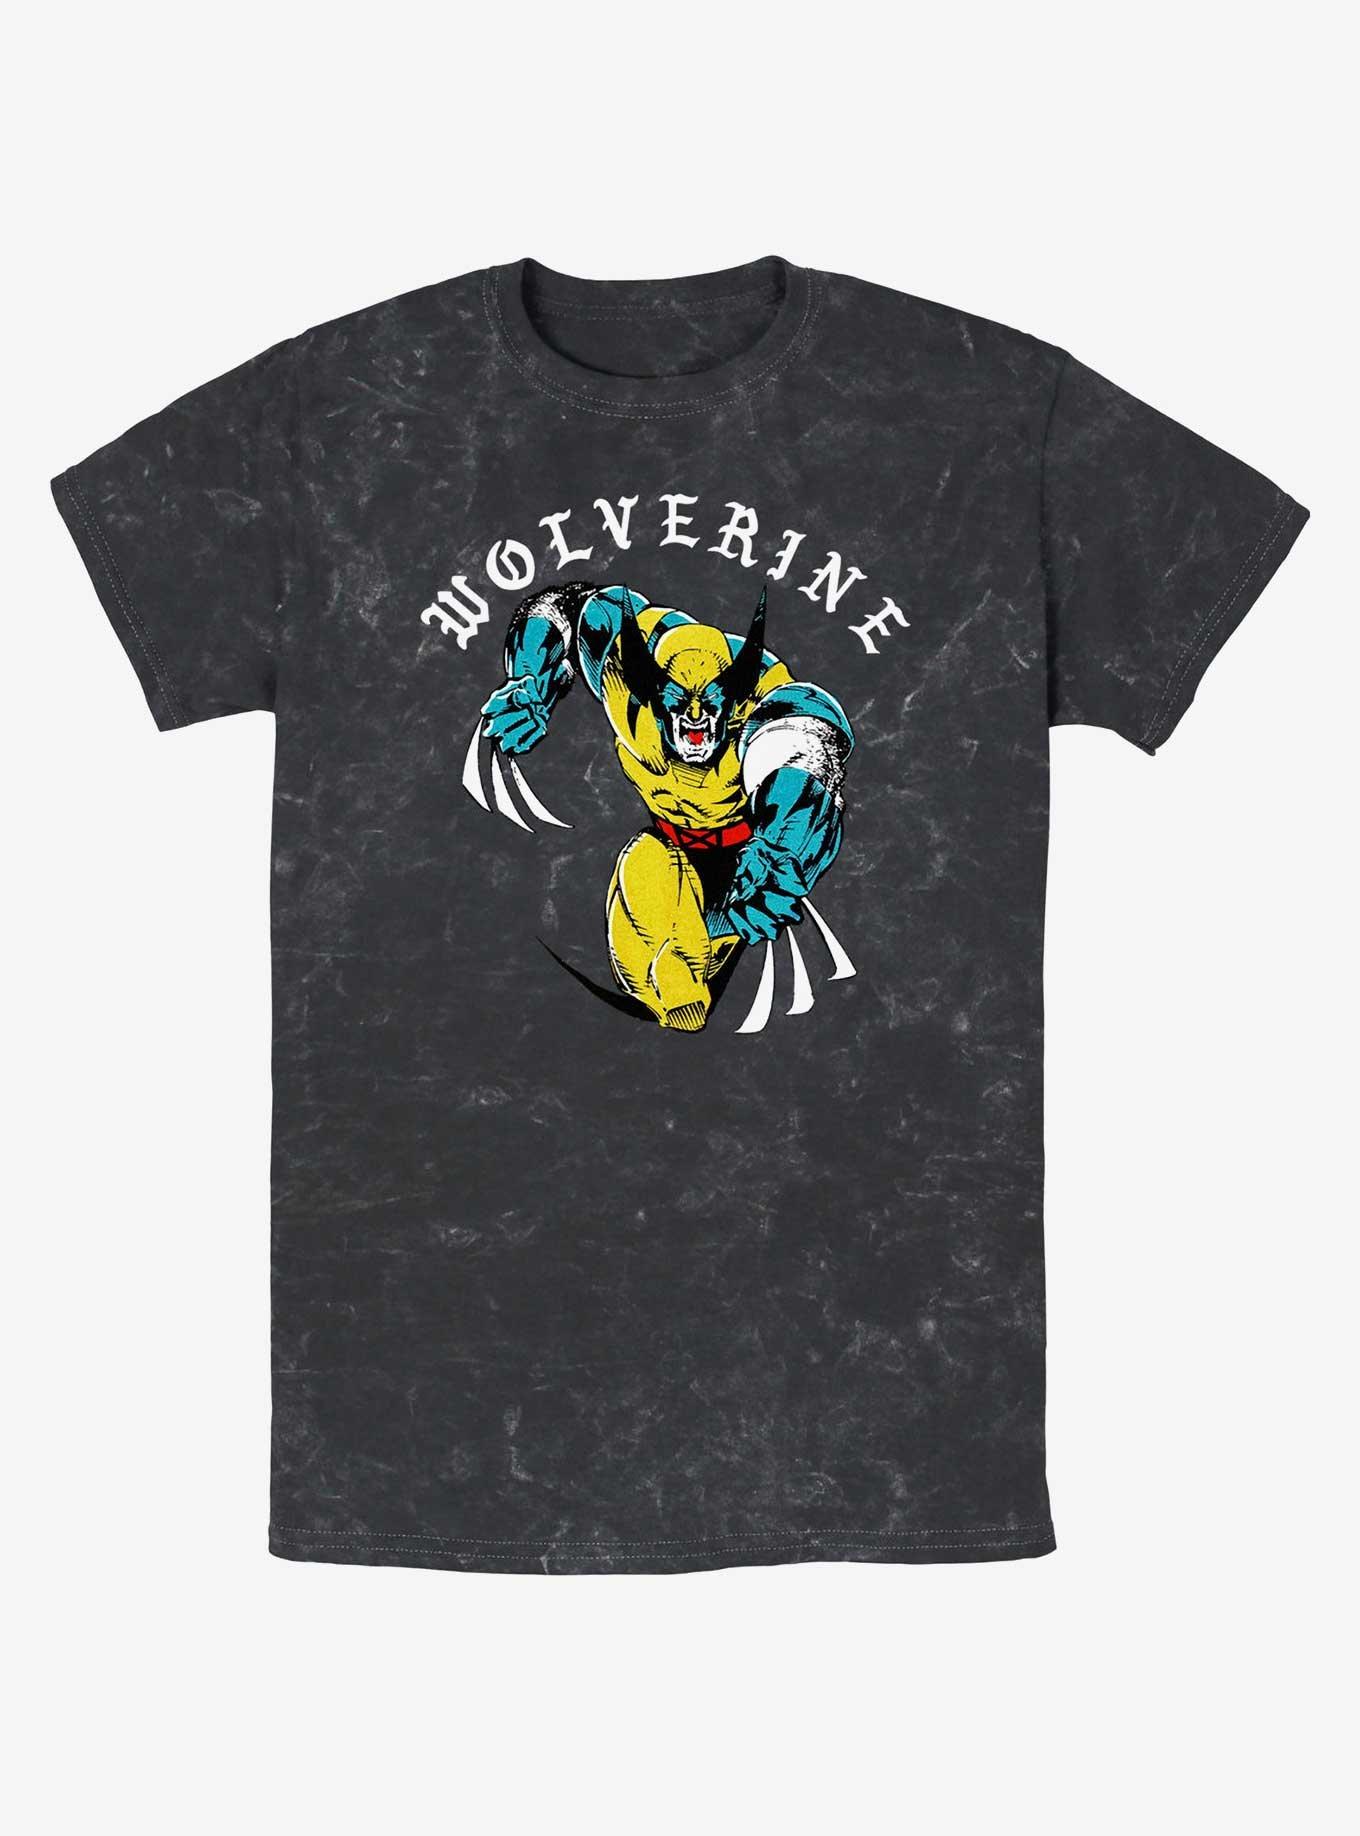 Wolverine Homeslice Mineral Wash T-Shirt, BLACK, hi-res